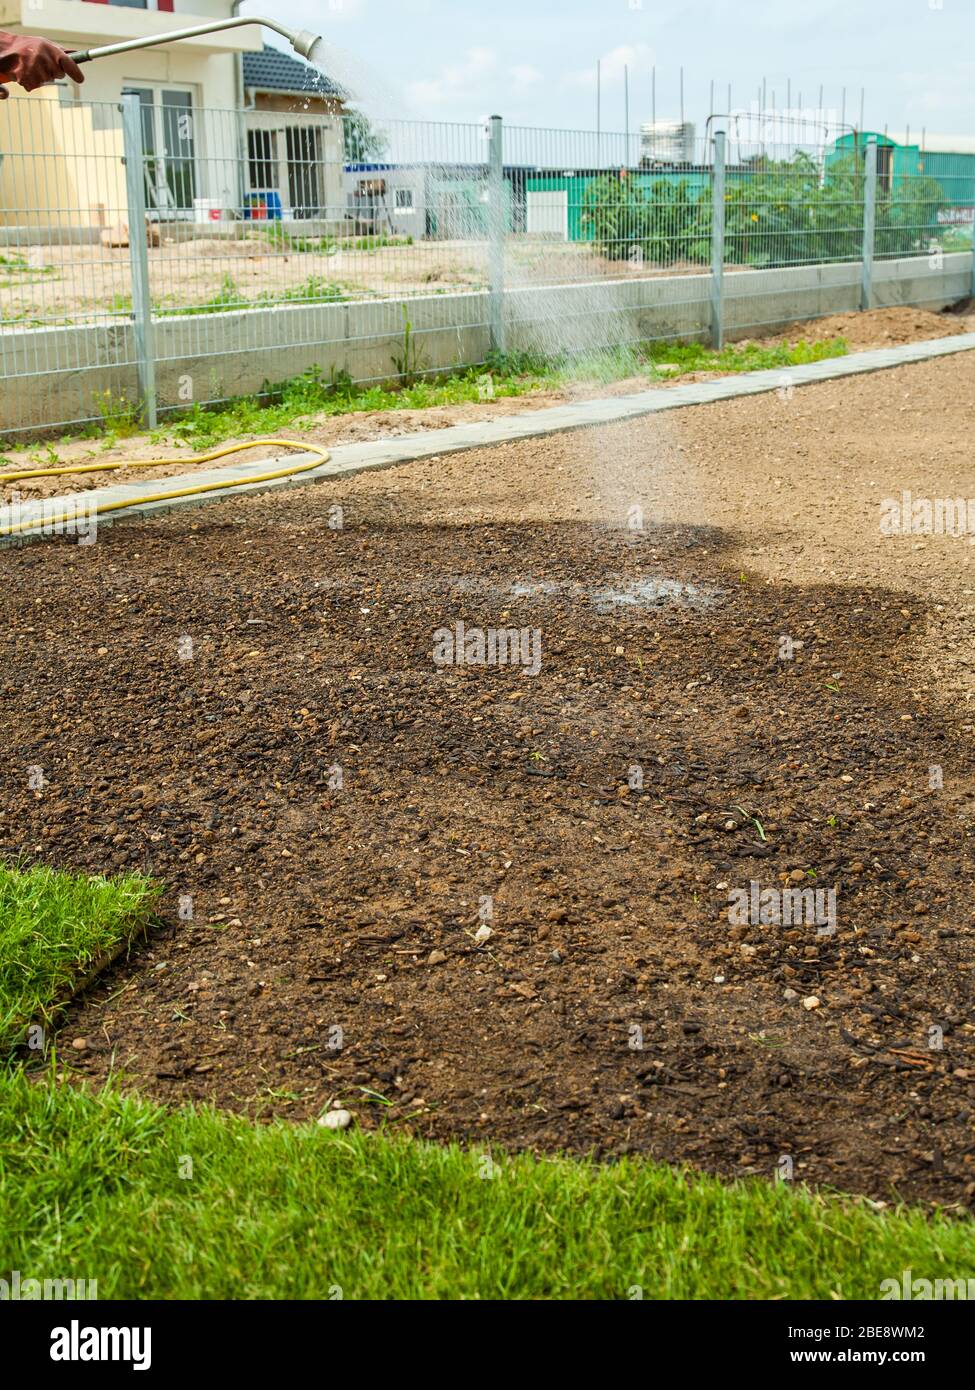 Gartenarbeit - Aufbereiten und Bewässern von Sod für den neuen Rasen Stockfoto